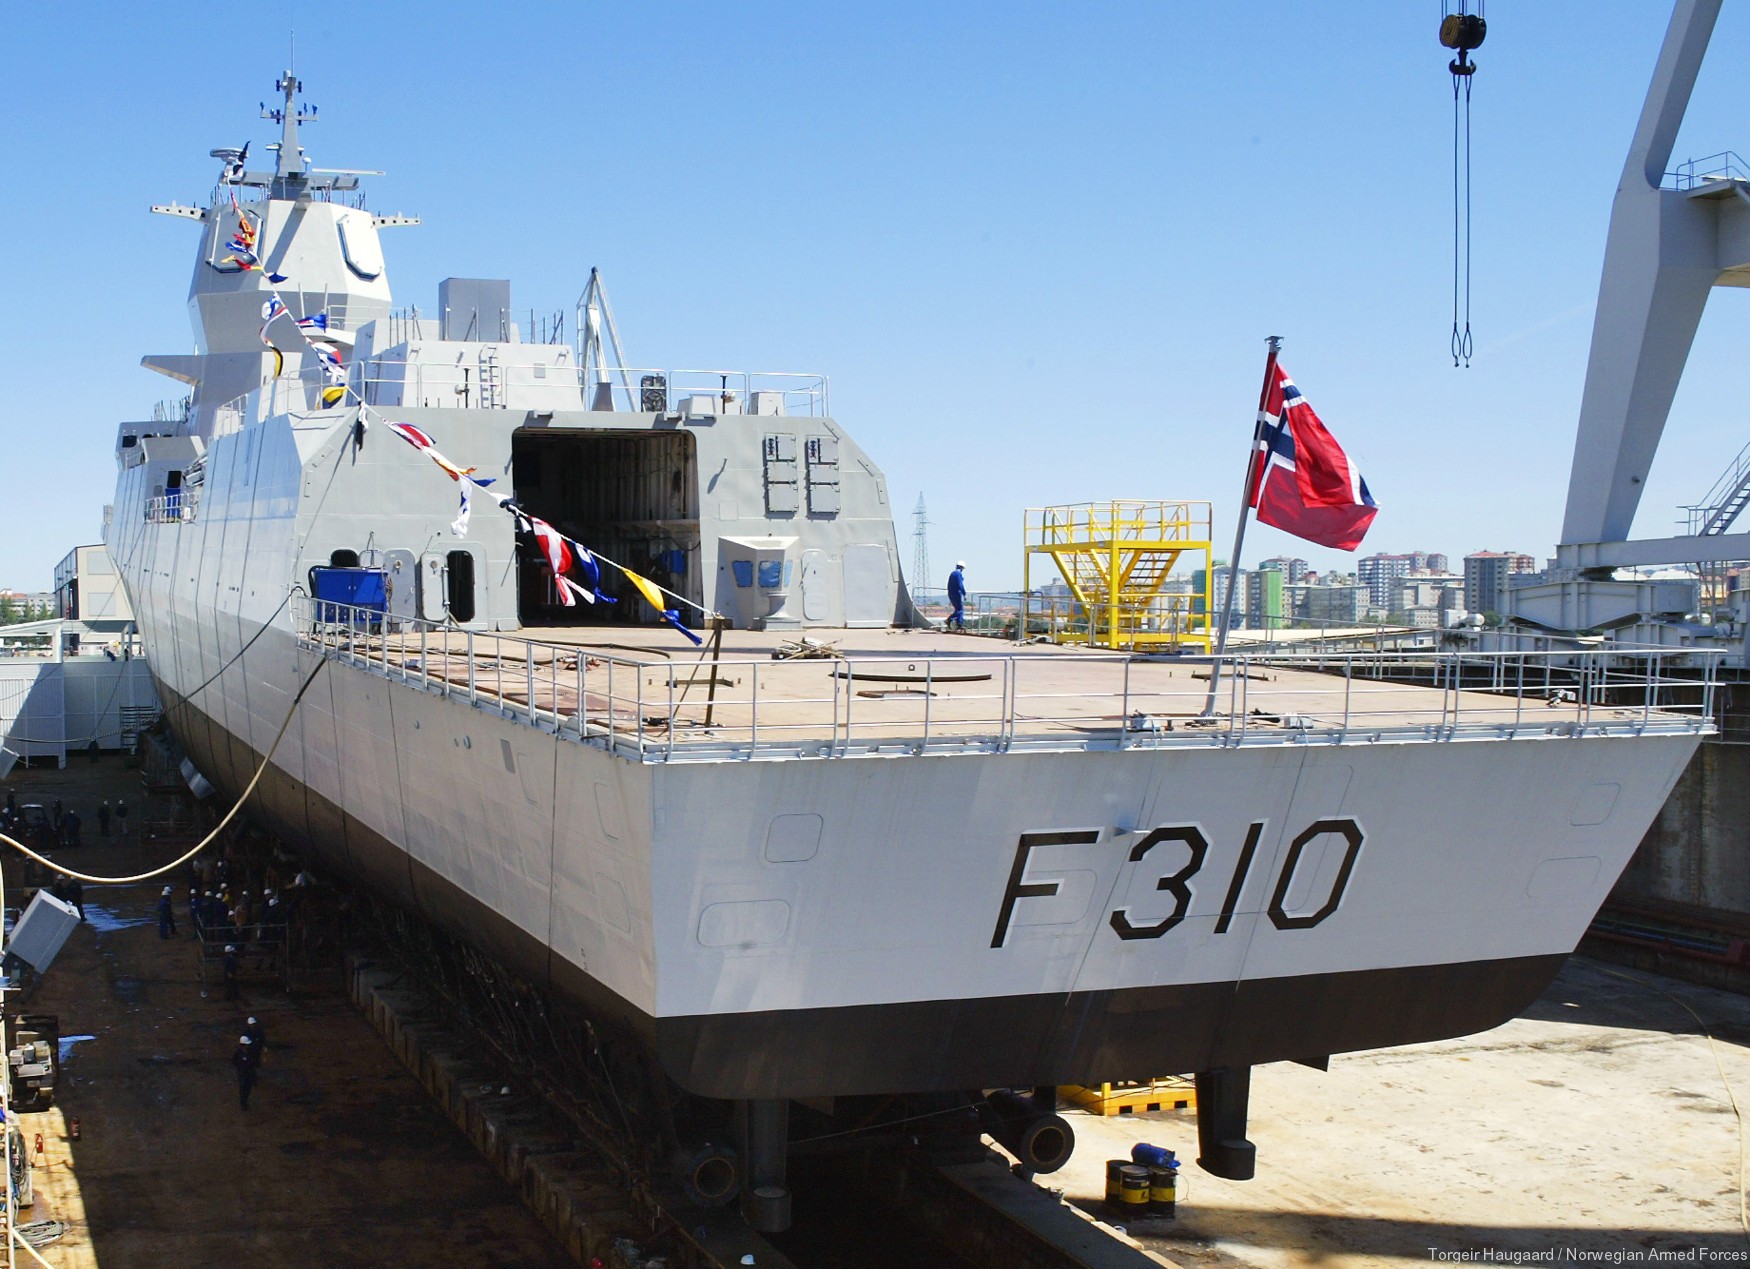 f-310 fridtjof nansen hnoms knm frigate royal norwegian navy sjoforsvaret 54 launching ceremony ferrol spain